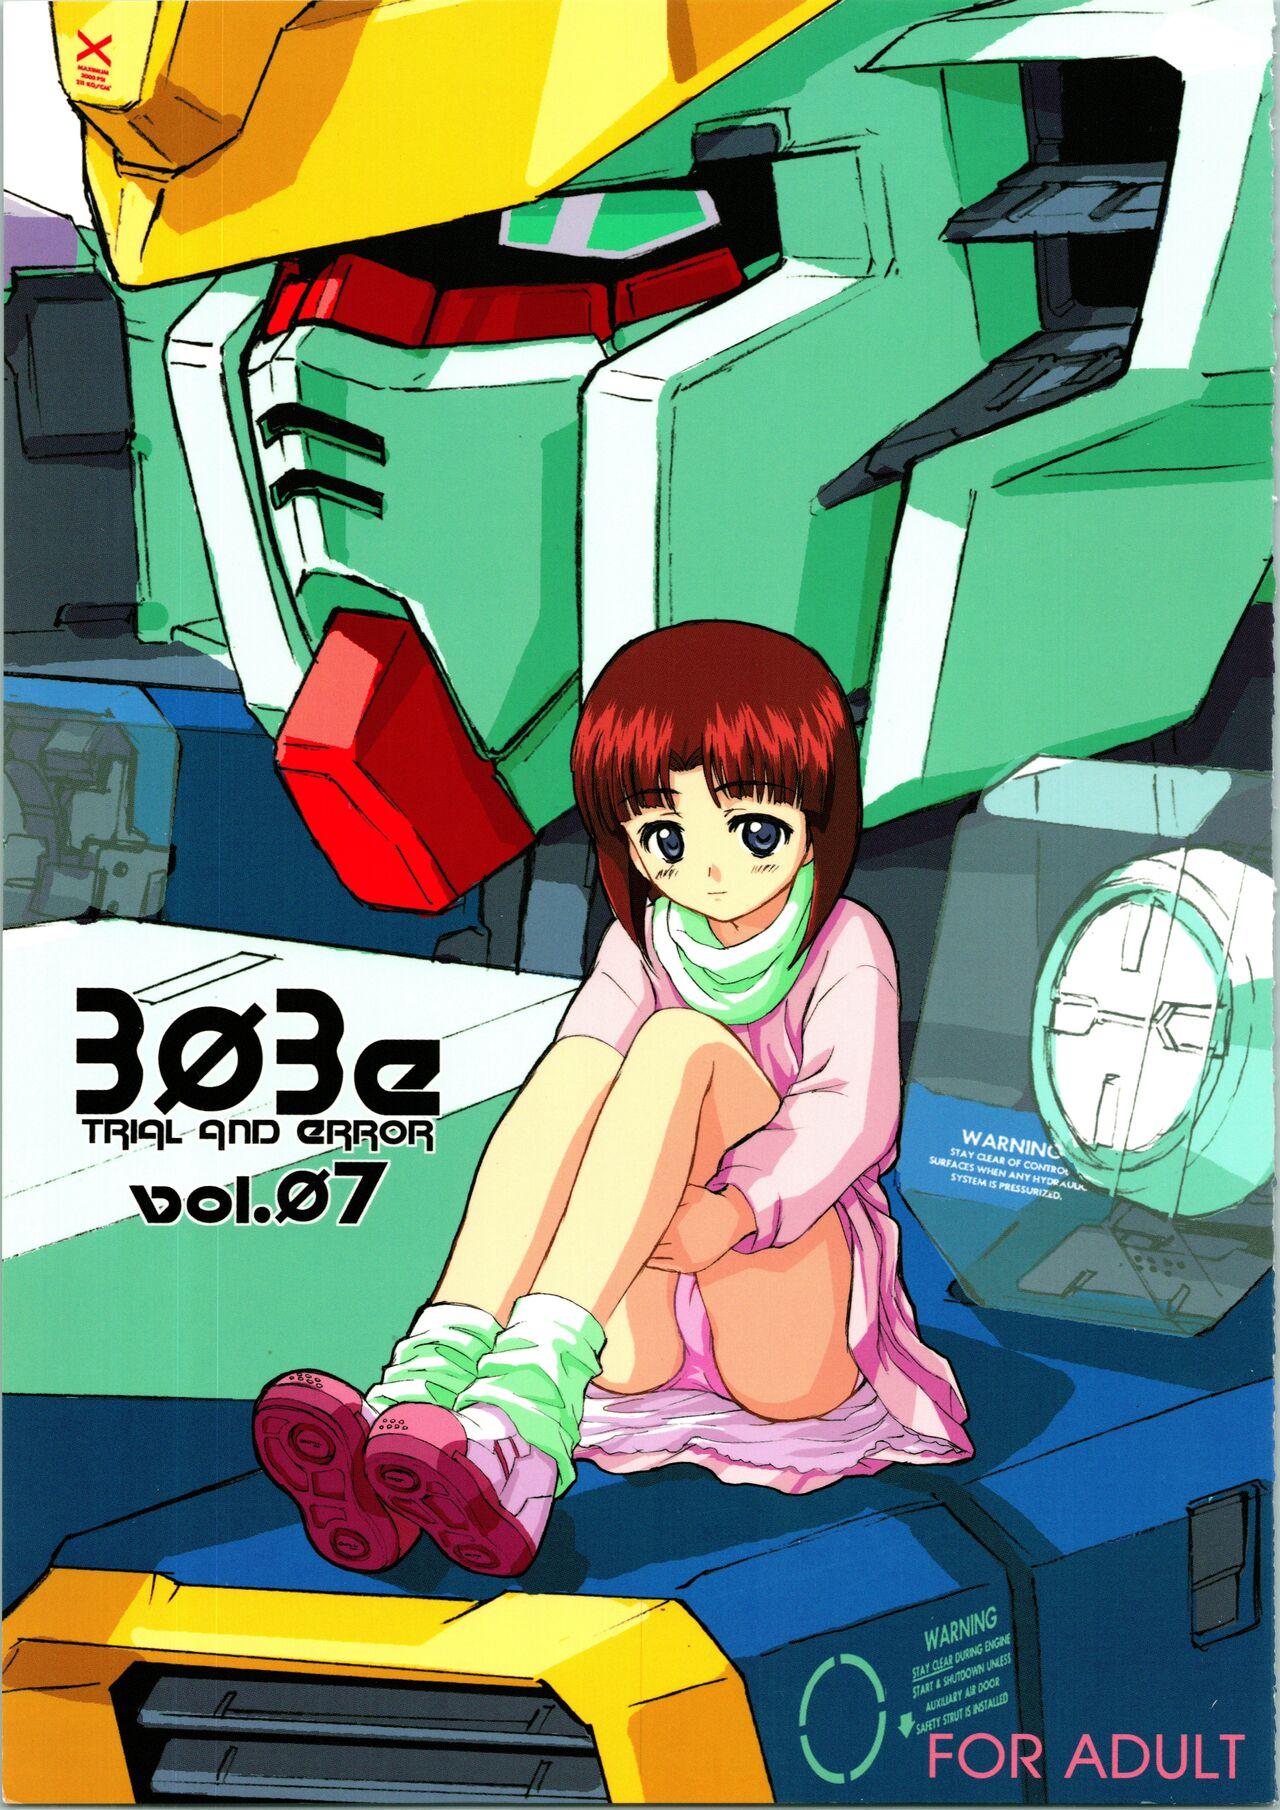 Dildos [WINDFALL (Aburaage)] 303e Vol. 07 (Gundam X, R.O.D the TV) ZHOA8229 - Read or die Gundam x Blackdick - Picture 1